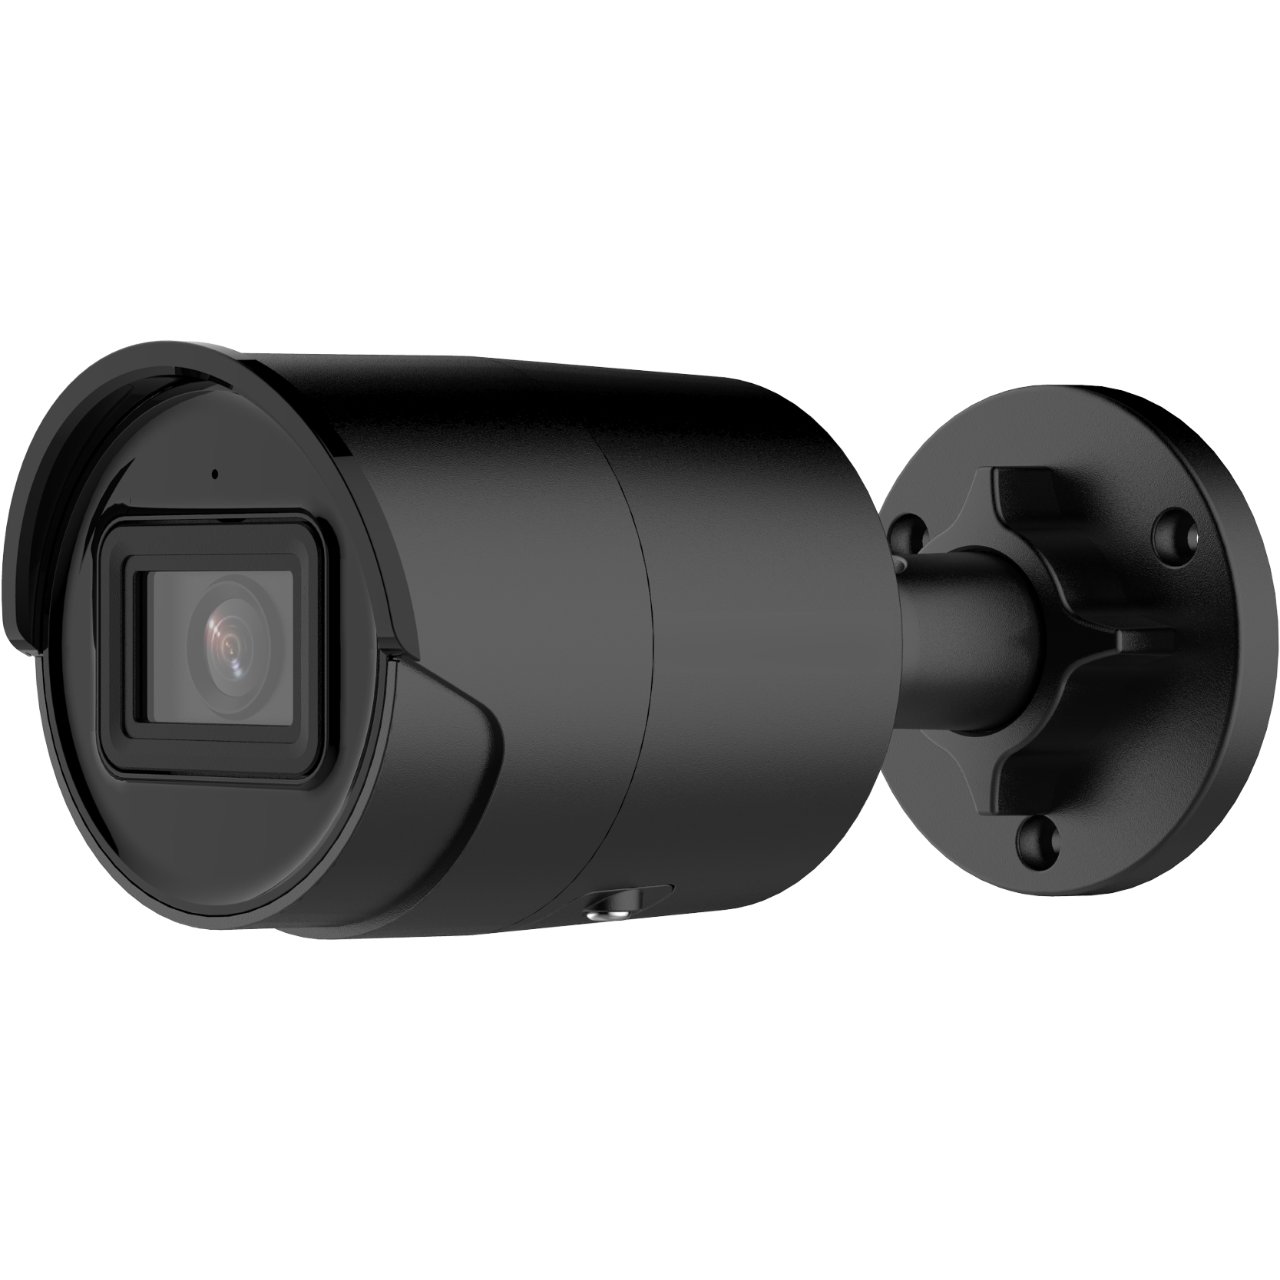 IPカメラ バレット型 DS-2CD2046G2-I | 防犯カメラの激安王カメサブロー